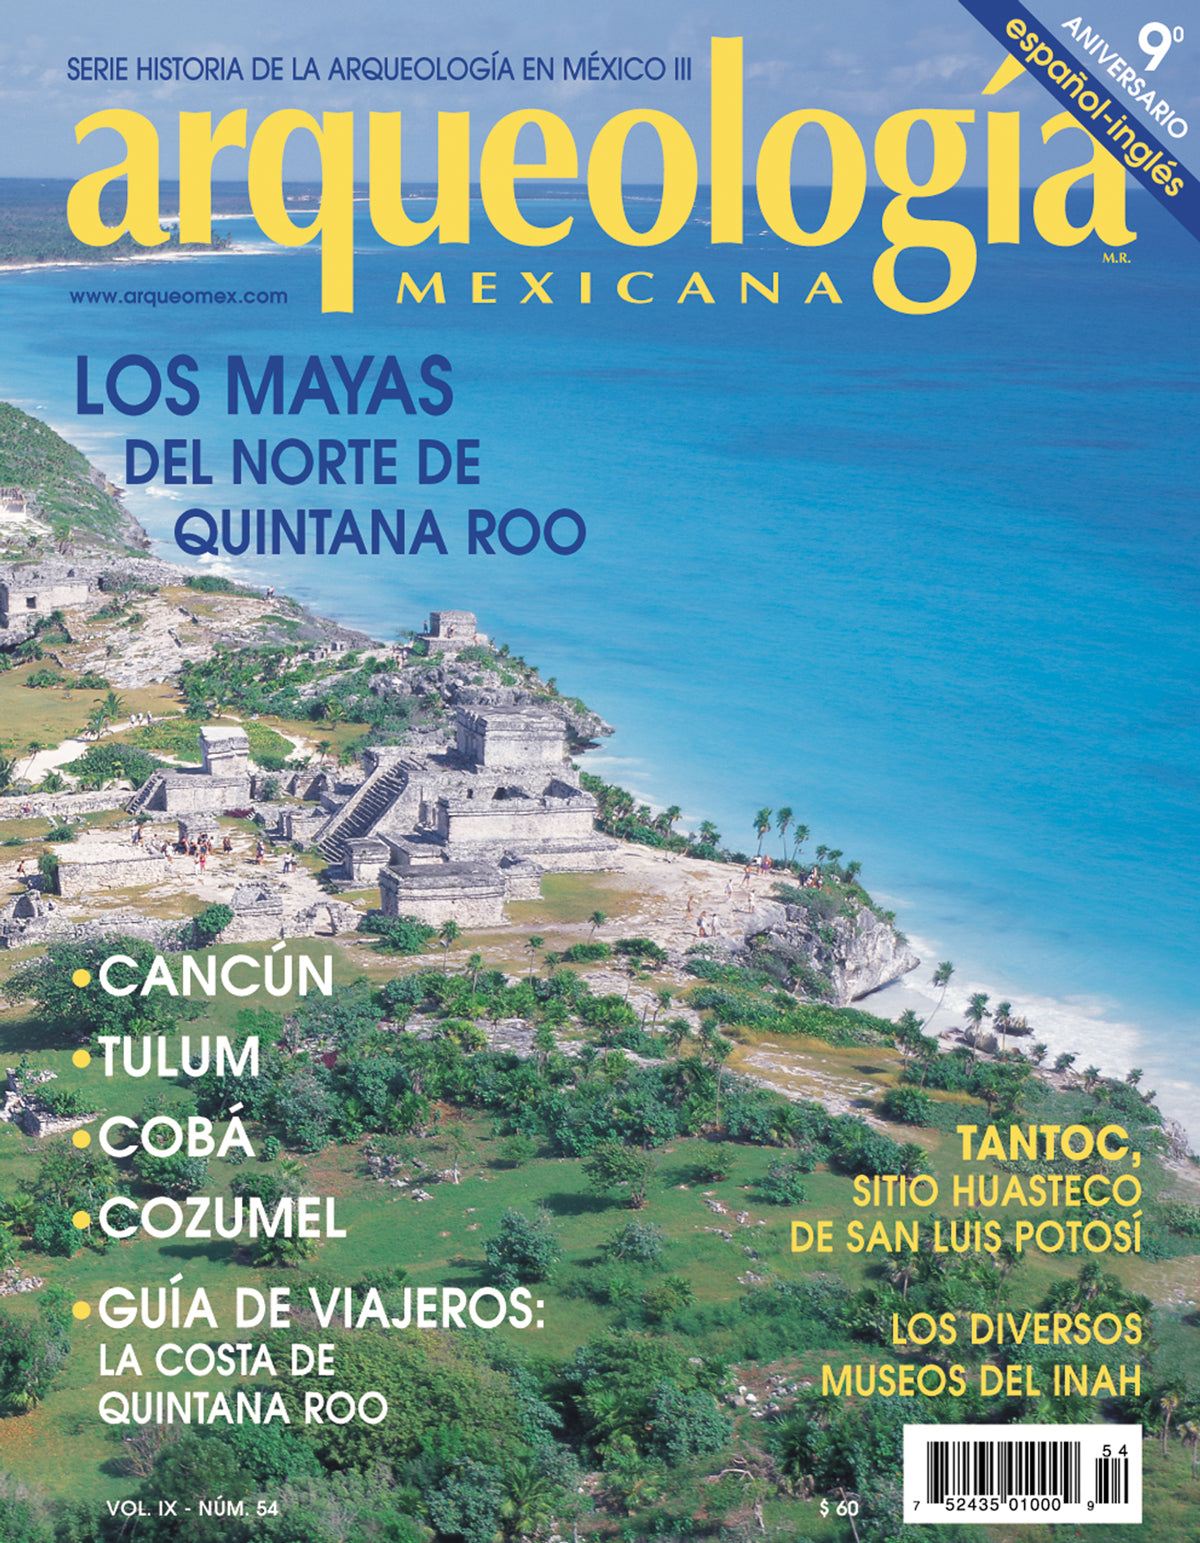 Los mayas del norte de Quintana Roo